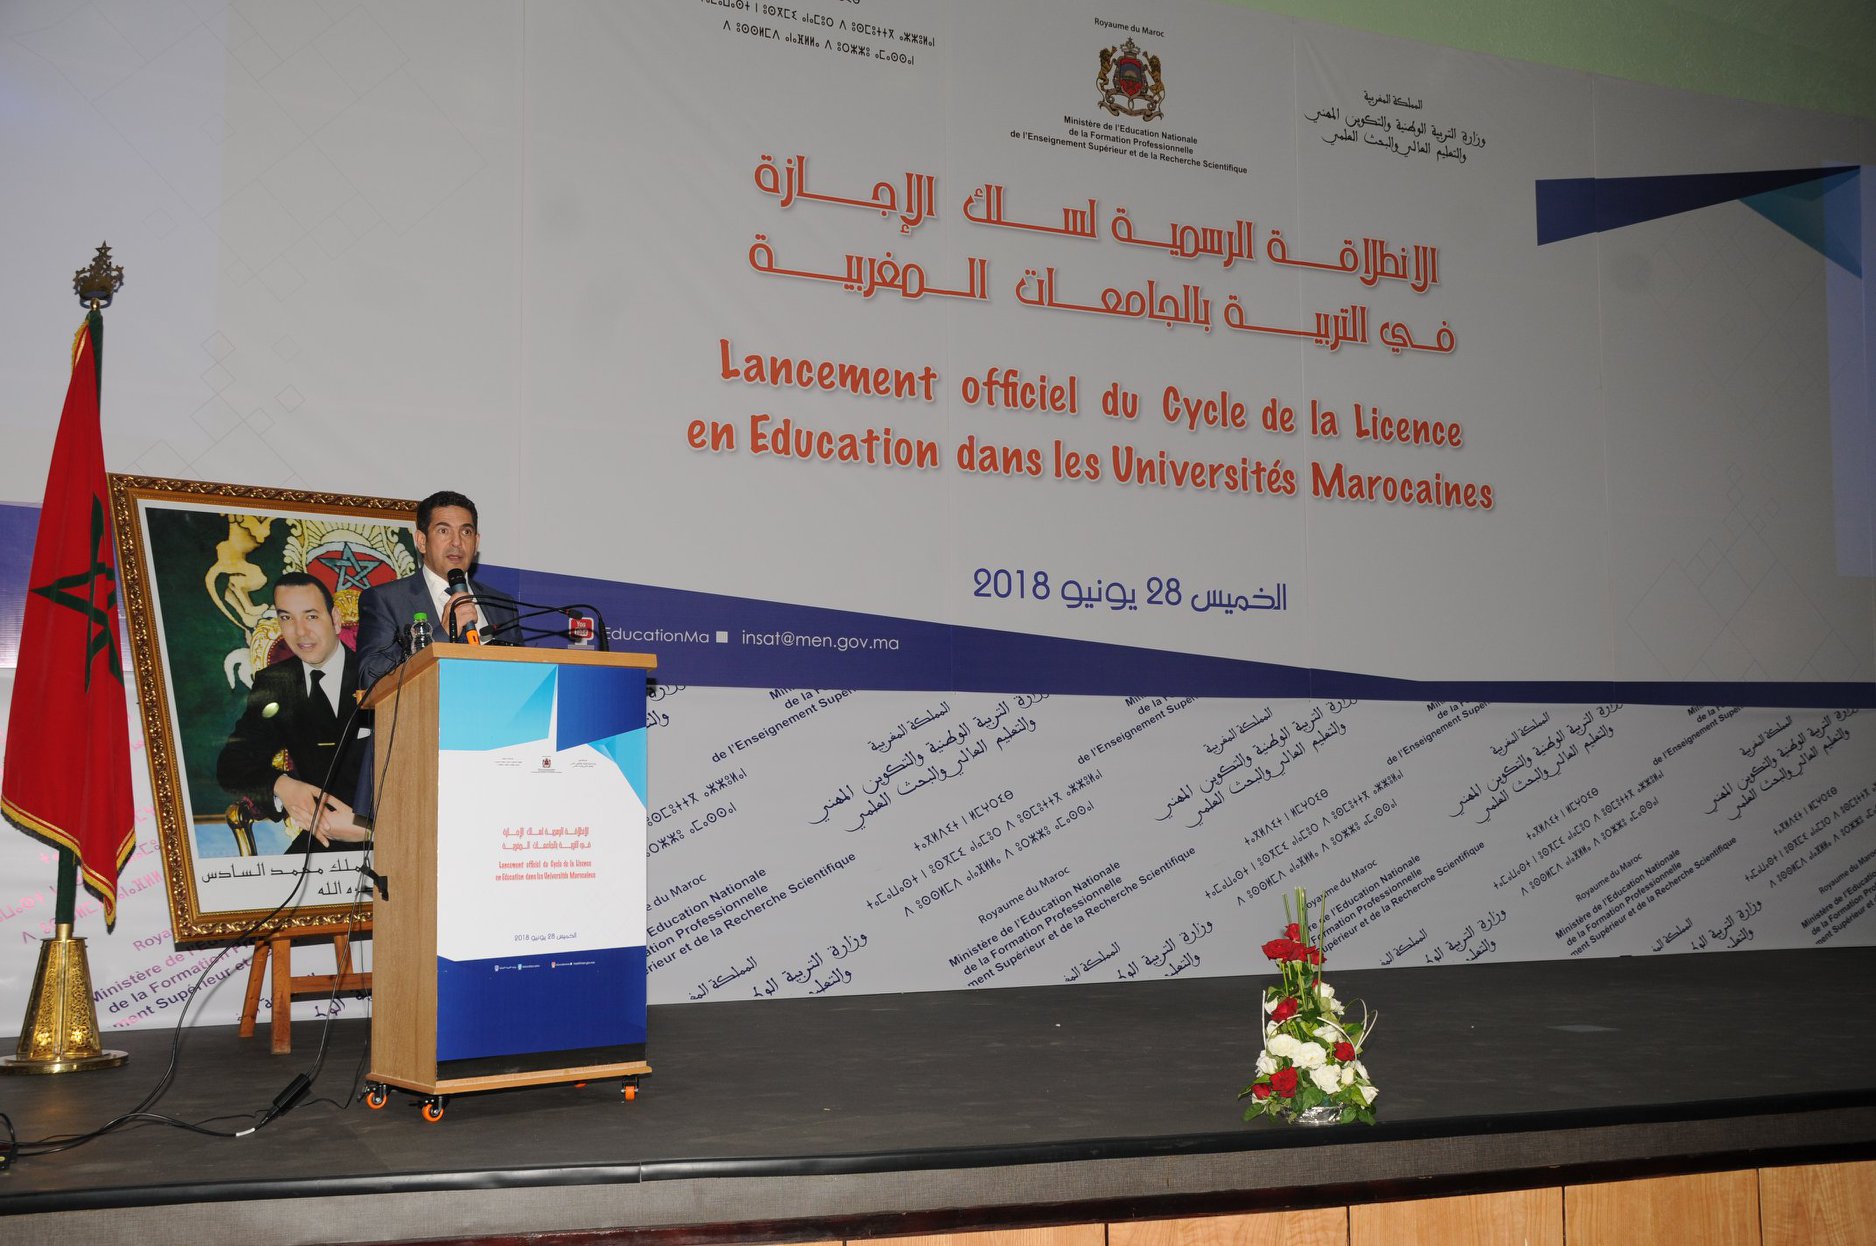  الانطلاقة الرسمية لسلك الإجازة في التربية بالجامعات المغربية 28 يونيو 2018